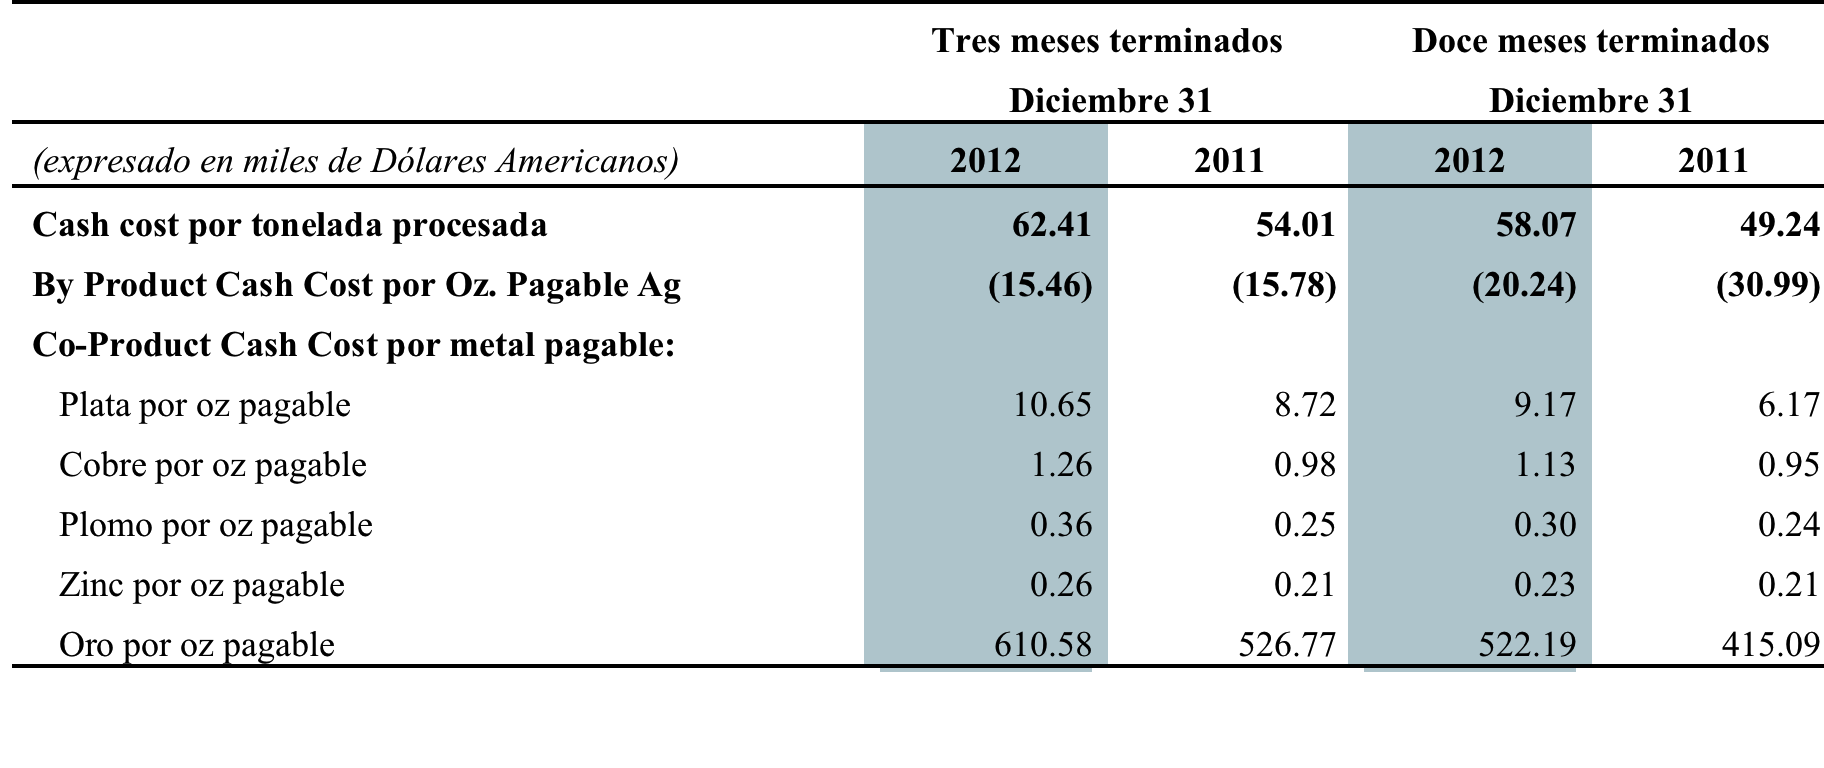 2011. La producción de cobre para el cuarto trimestre del 2012, disminuyó en un 14.0% con un total de 2.2 millones de libras producidas frente a 2.